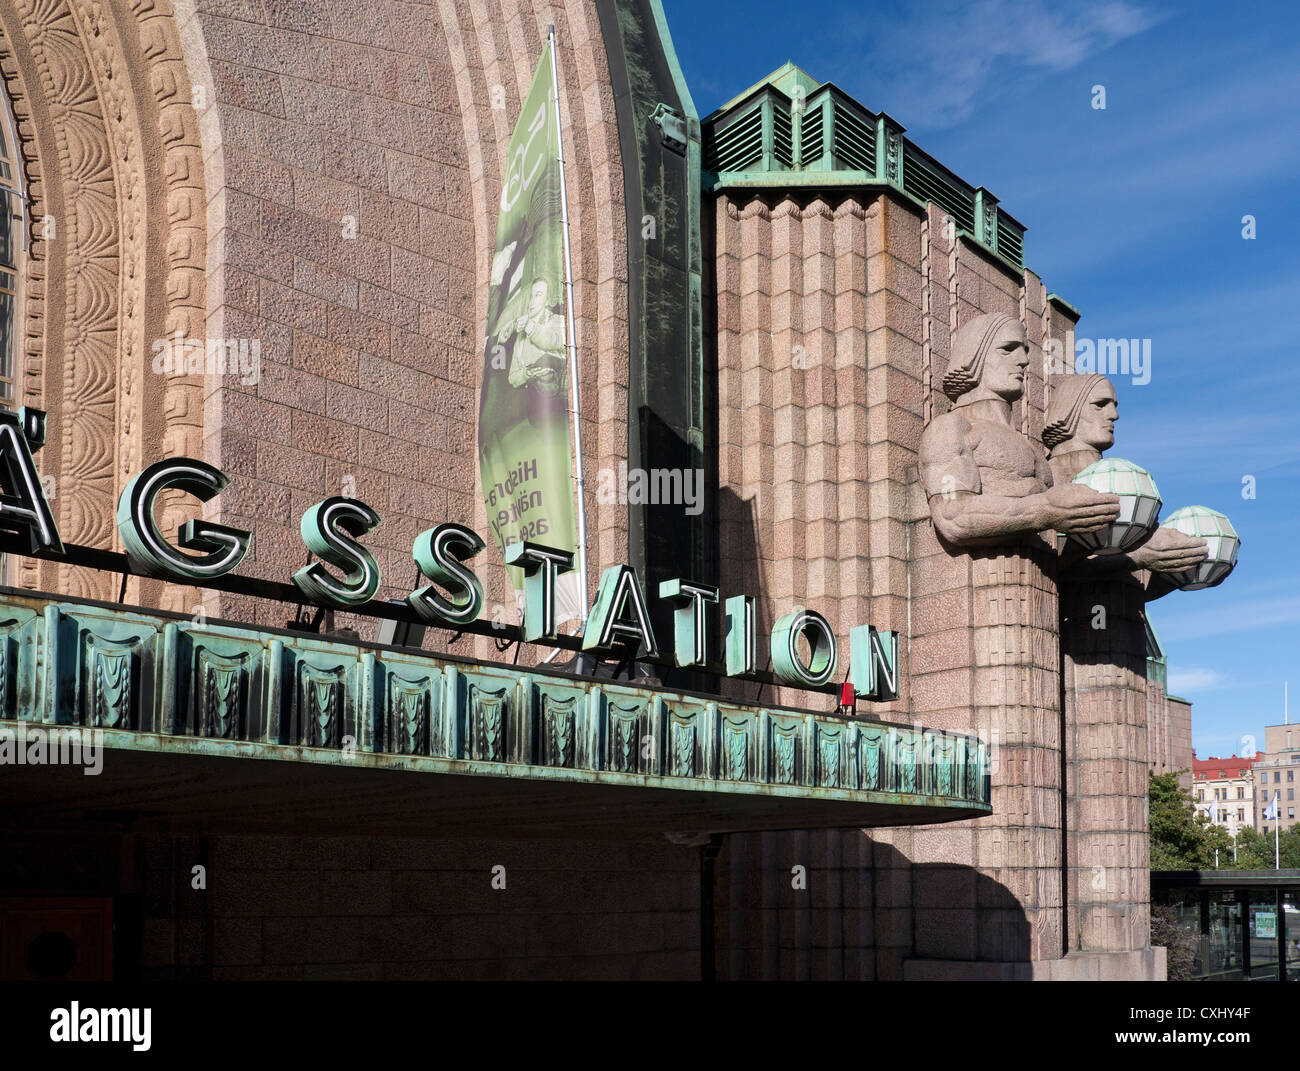 La estación central de Helsinki exterior neoclásico histórico con figuras de piedra sosteniendo lámparas Finlandia Helsinki Foto de stock